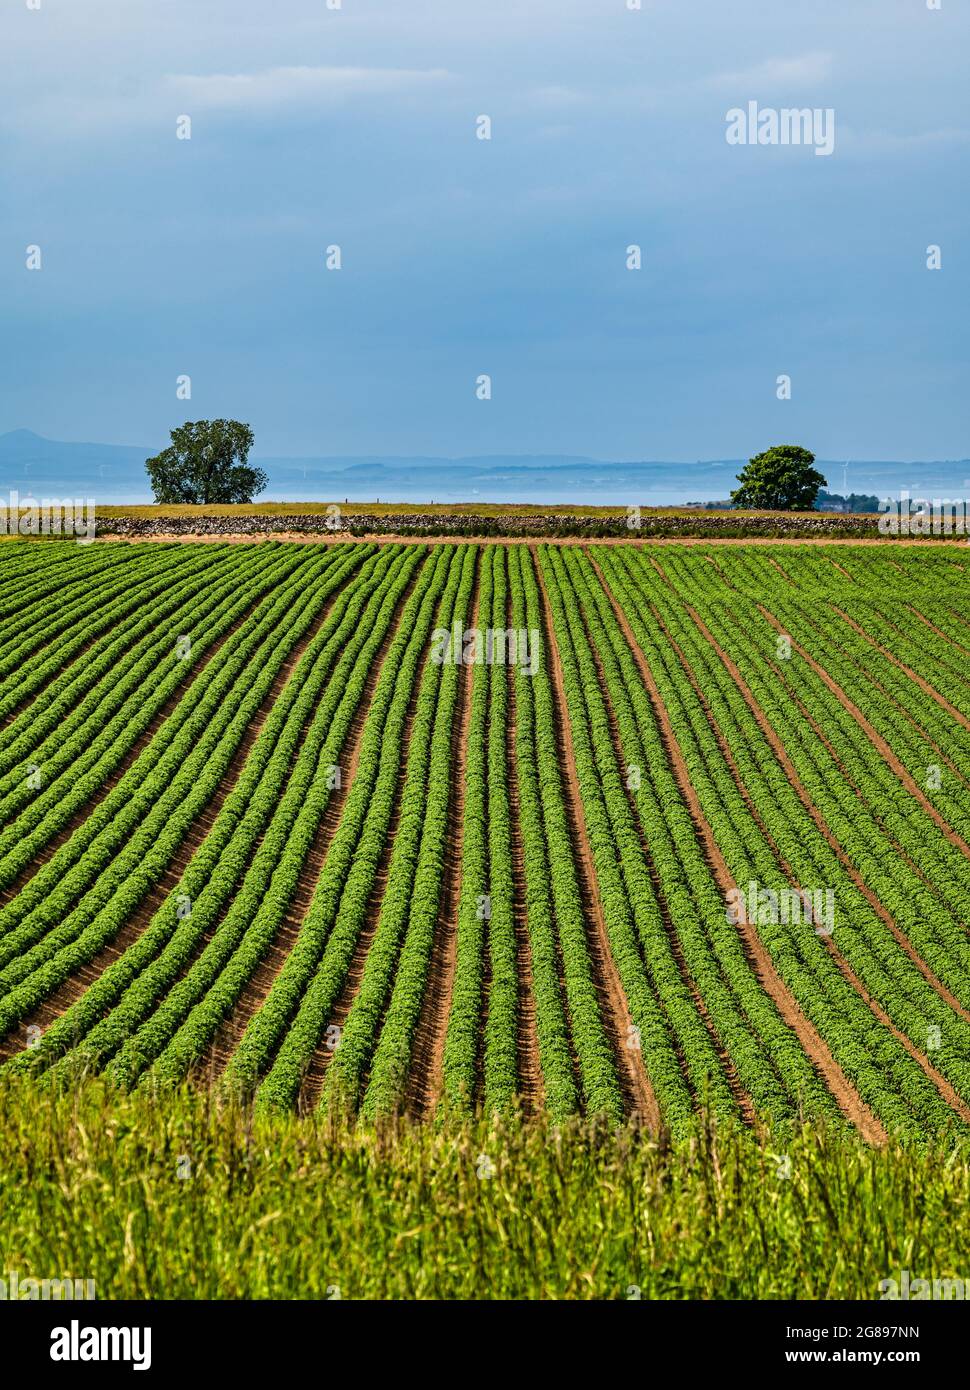 Rangées de plants de pommes de terre poussant dans le champ de culture au soleil, East Lothian, Écosse, Royaume-Uni Banque D'Images